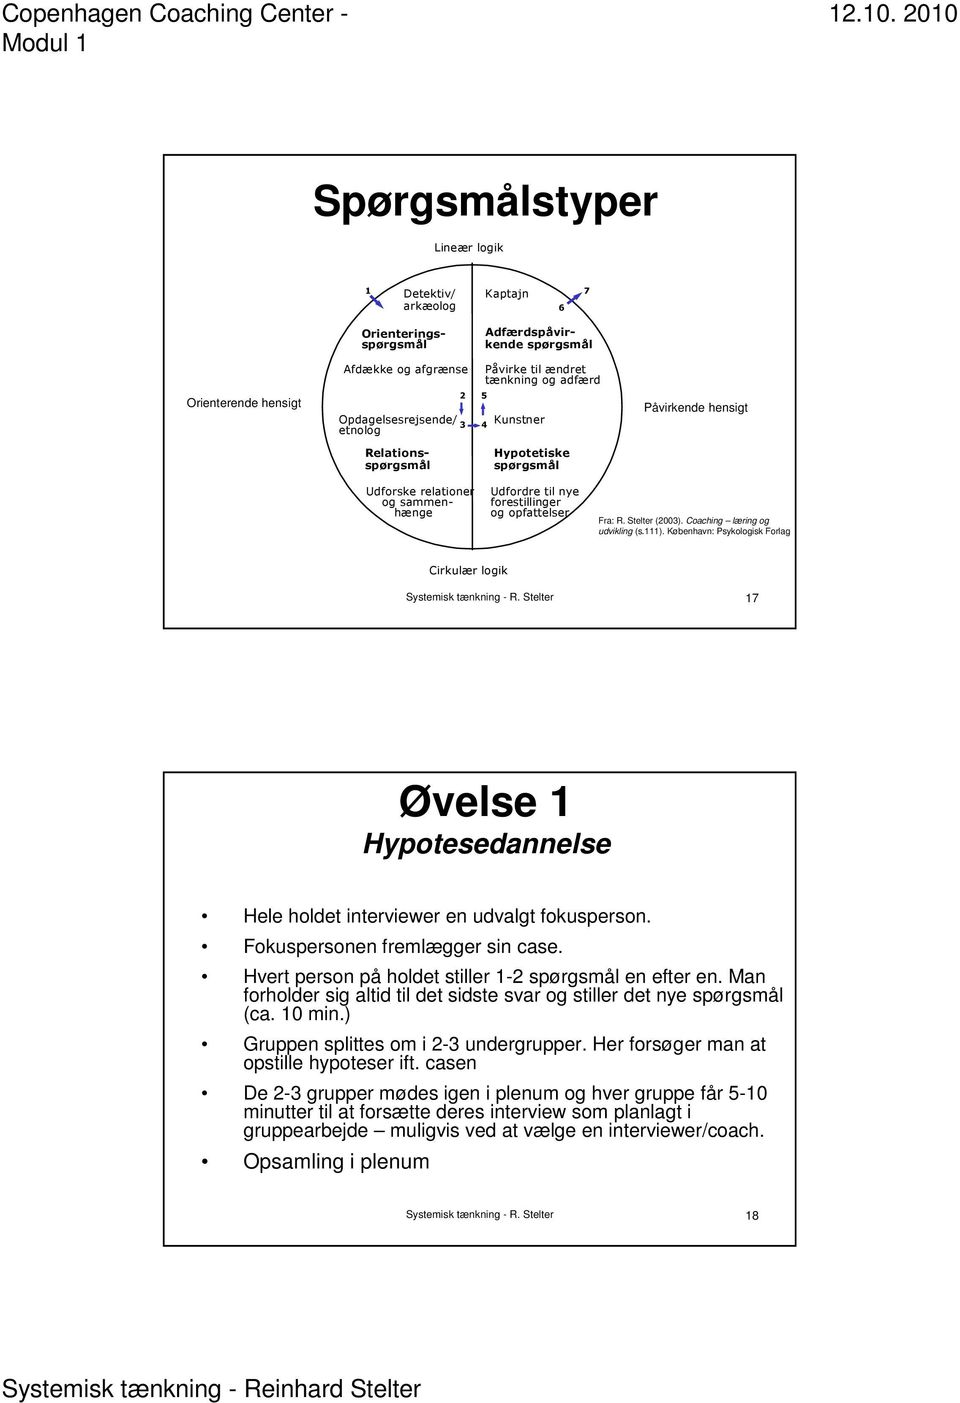 Program til dagen. Introduktion til systemisk tænkning & praksis Copenhagen  Coaching Center - Modul 1. Reinhard Stelter Ph.d. - PDF Free Download